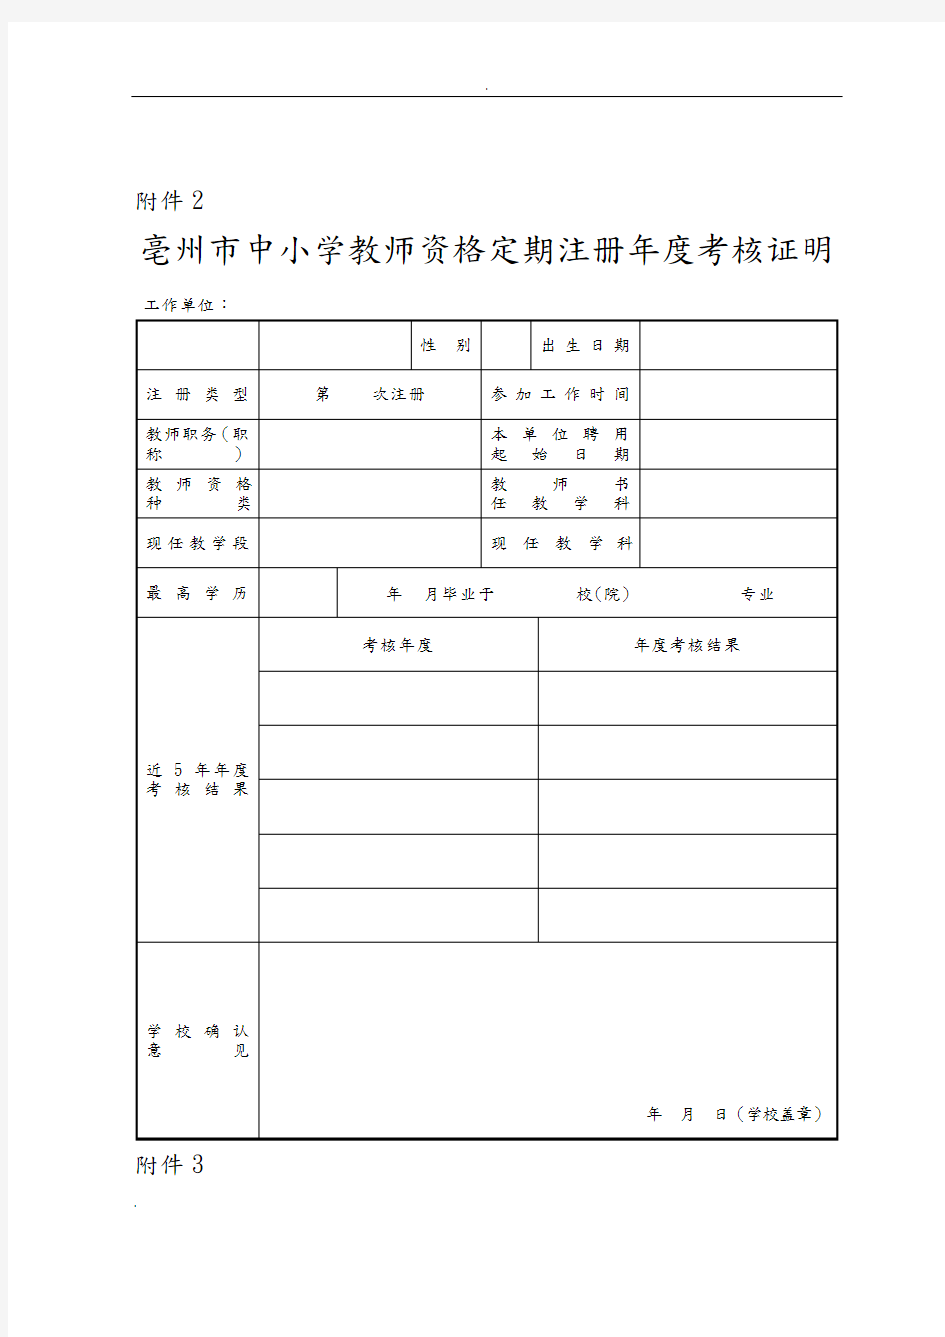 亳州市中小学教师资格定期注册师德表现证明 - 副本